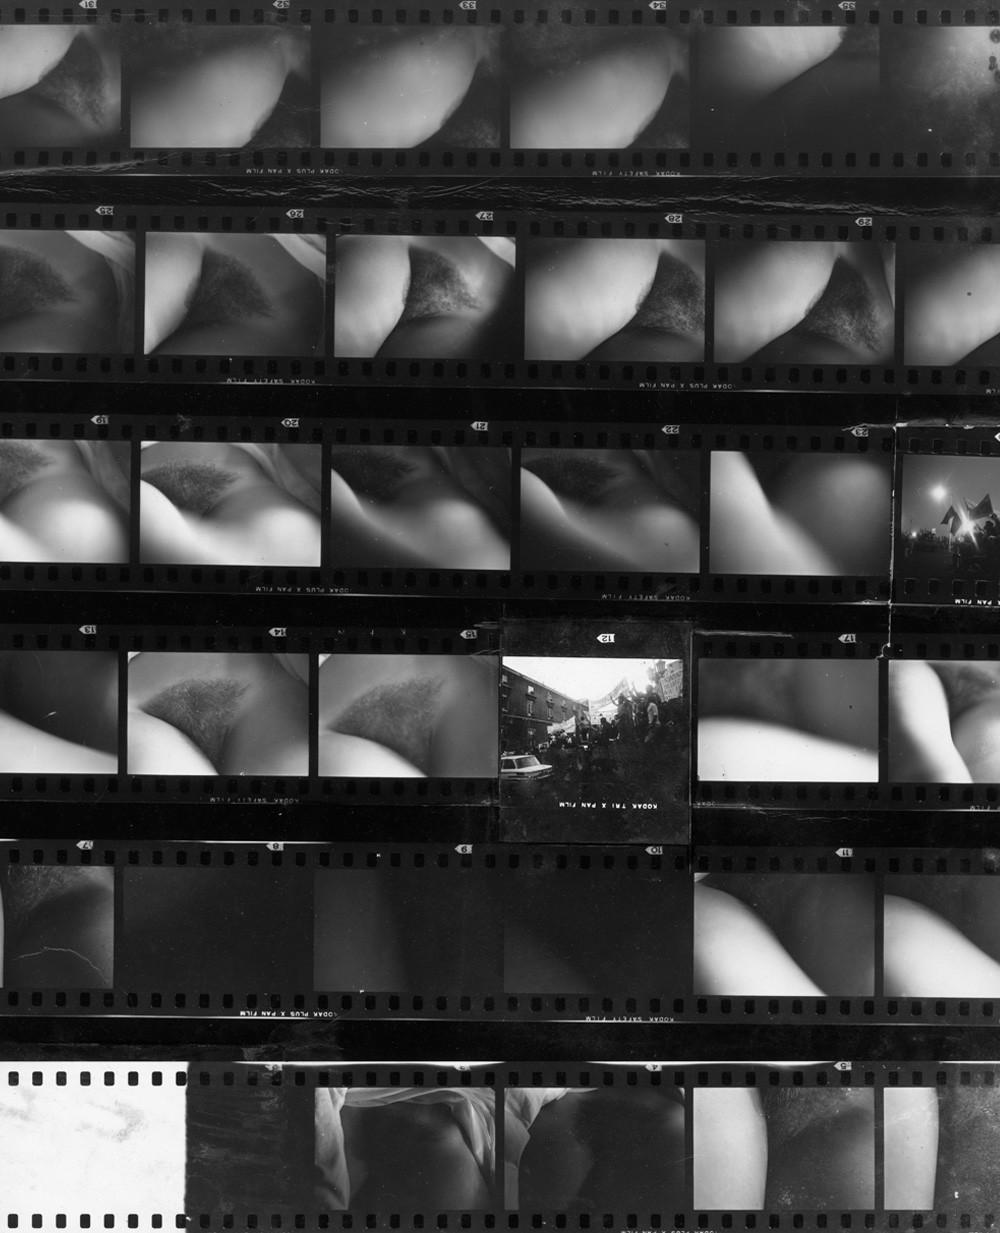  Ernesto de Sousa, fotomontagem em prova de contacto, da série "O Teu Corpo", c. 1974. 